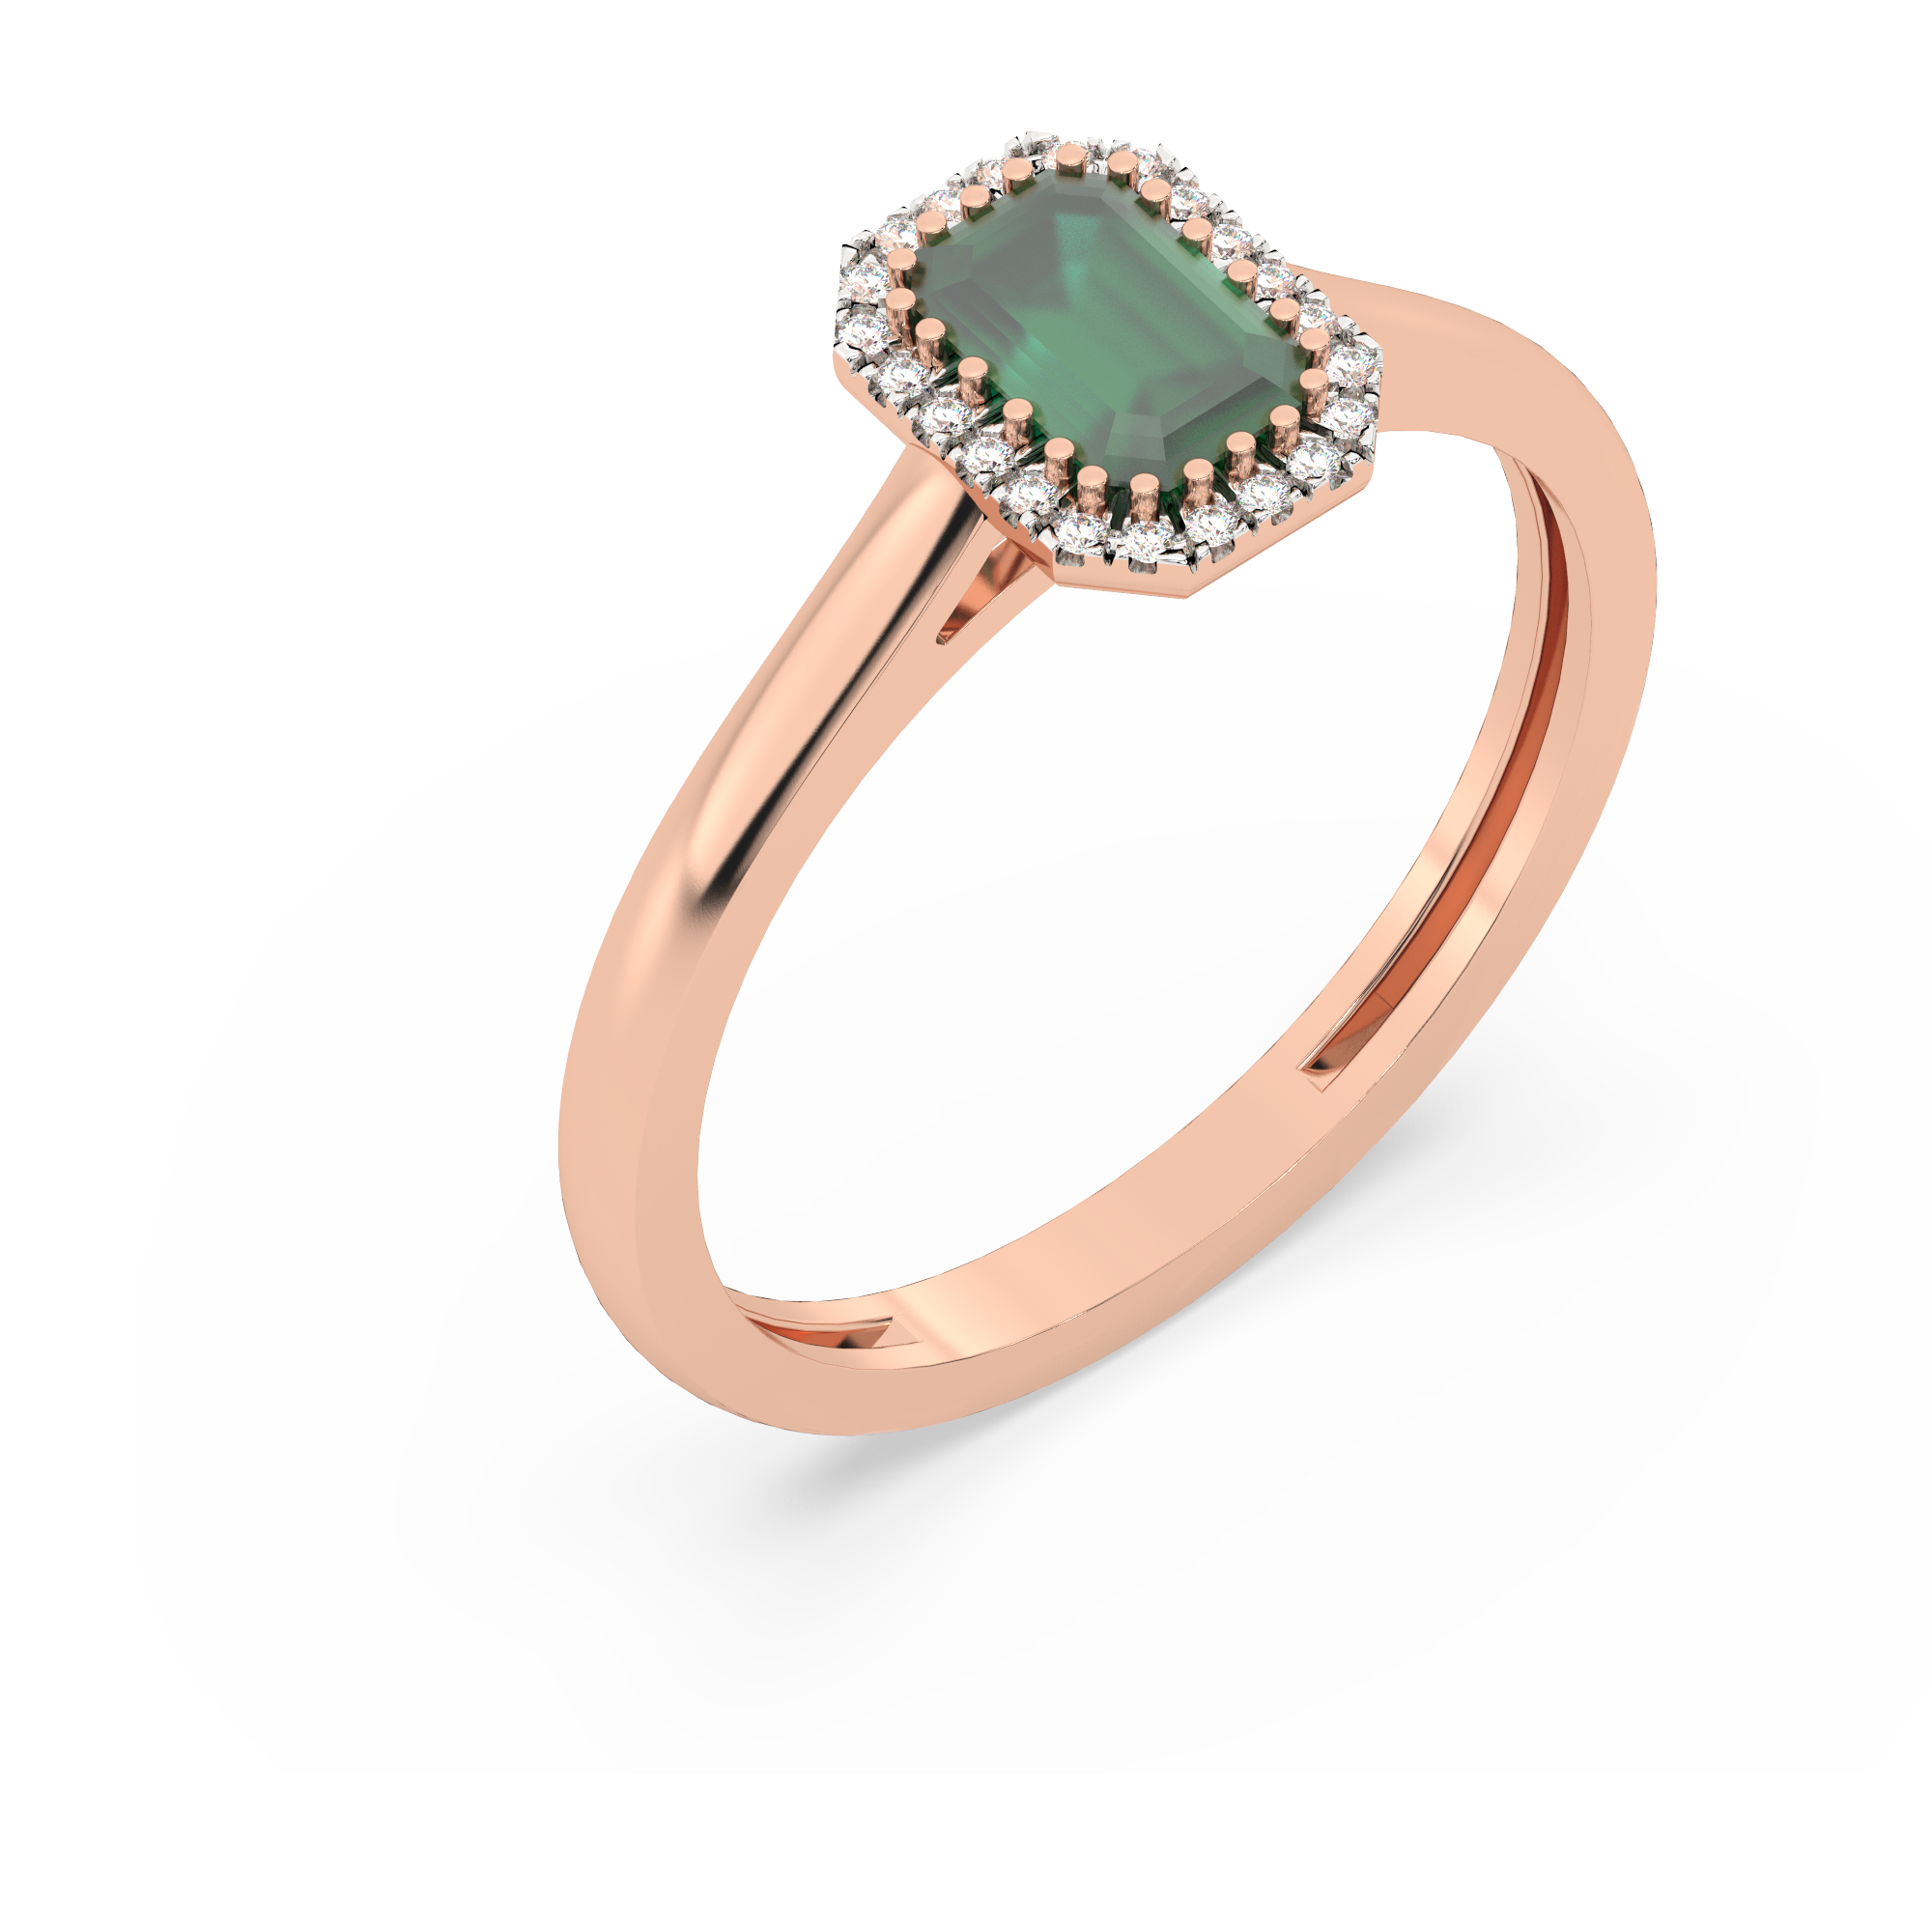 Klasyczny złoty pierścionek ze szmaragdem Różowy 9 - Venetia Jewels - 14K złoto z brylantami